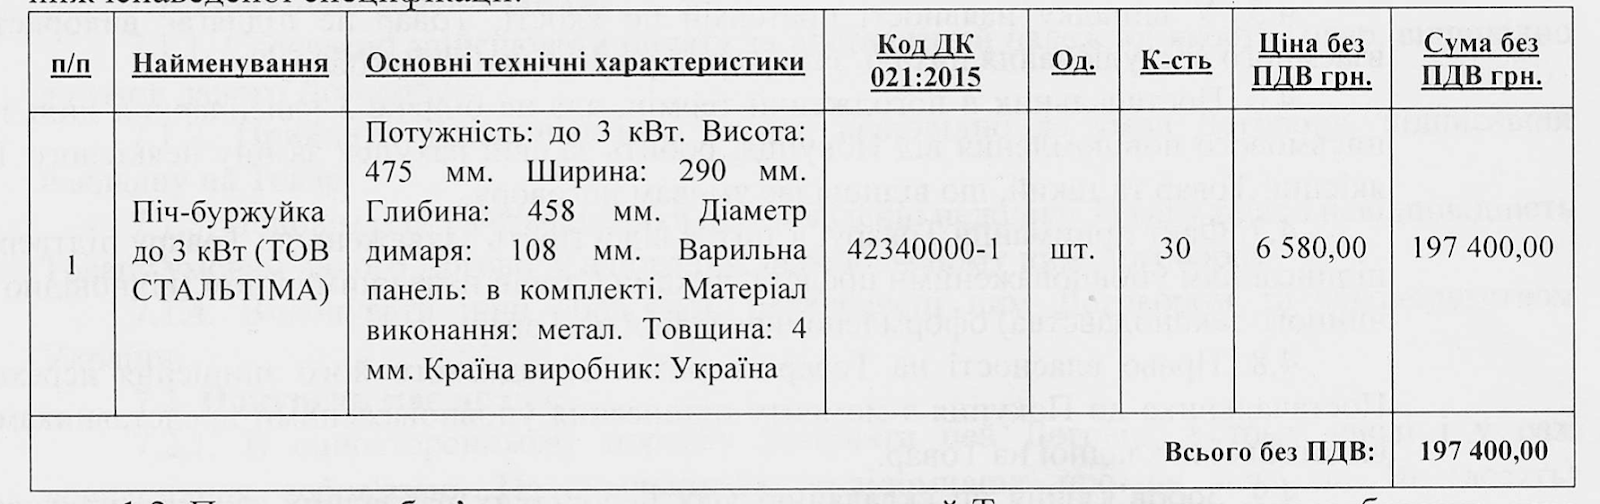 Запорожская область потратила 3,7 миллиона гривен на "буржуйки" (фото)